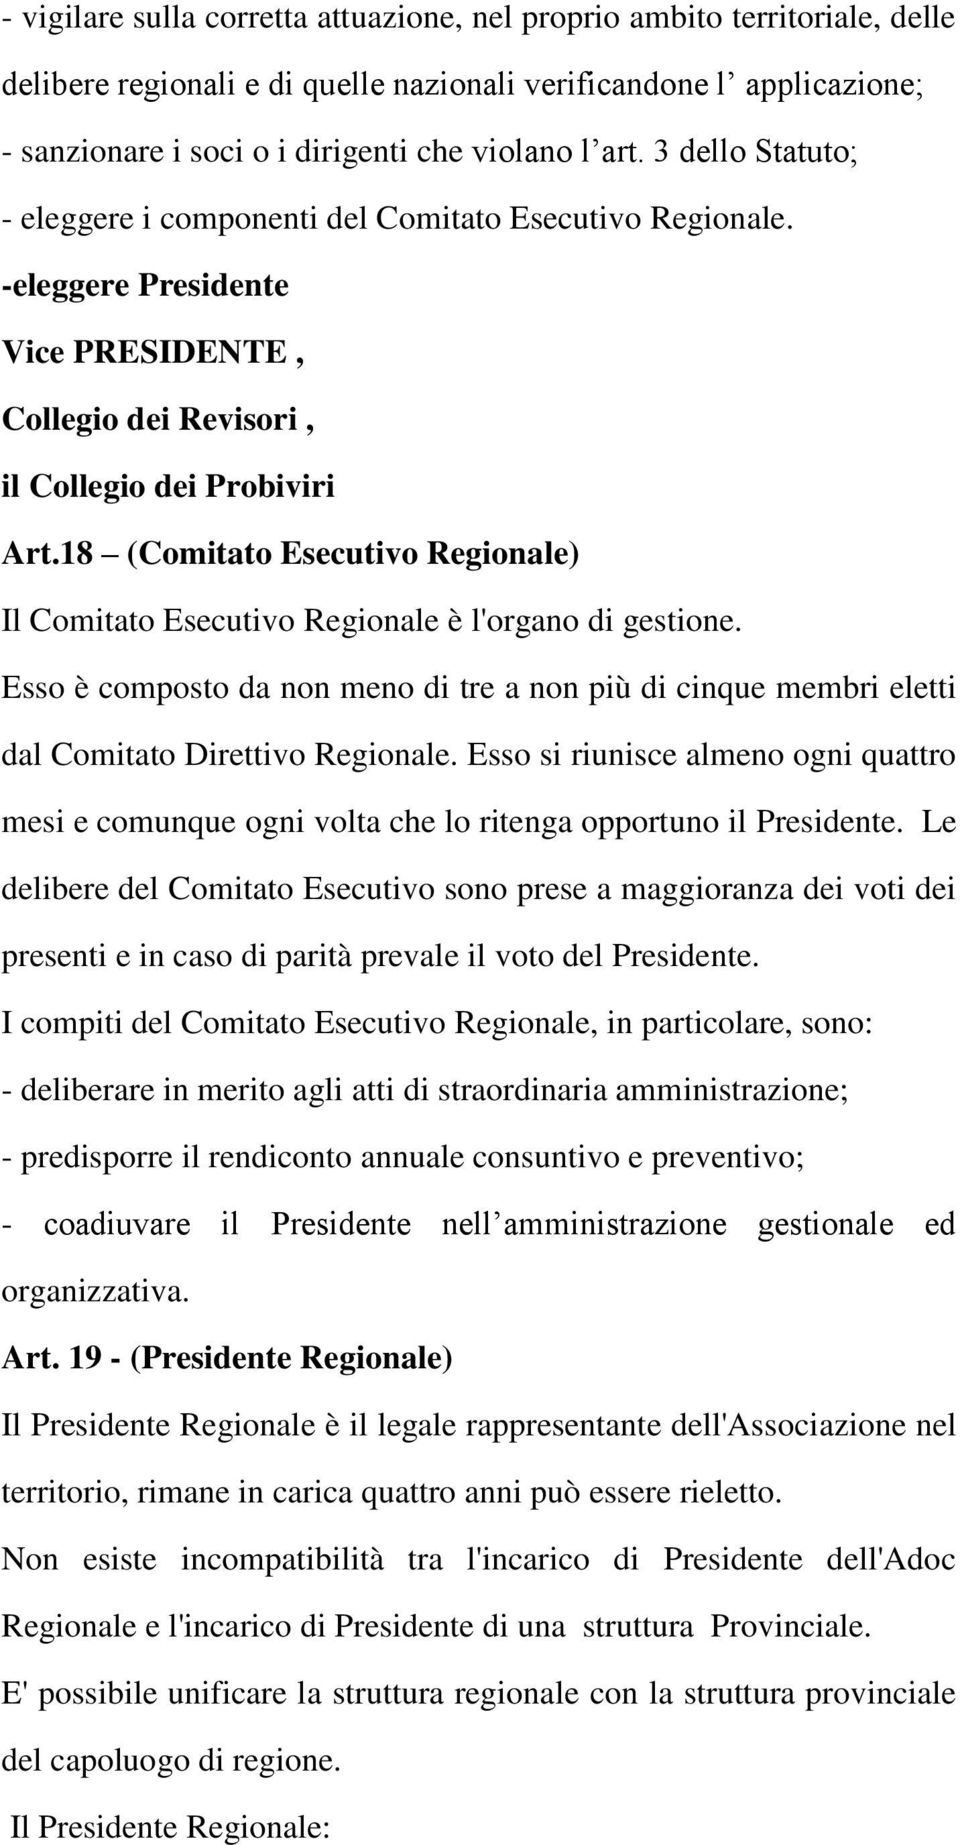 18 (Comitato Esecutivo Regionale) Il Comitato Esecutivo Regionale è l'organo di gestione. Esso è composto da non meno di tre a non più di cinque membri eletti dal Comitato Direttivo Regionale.